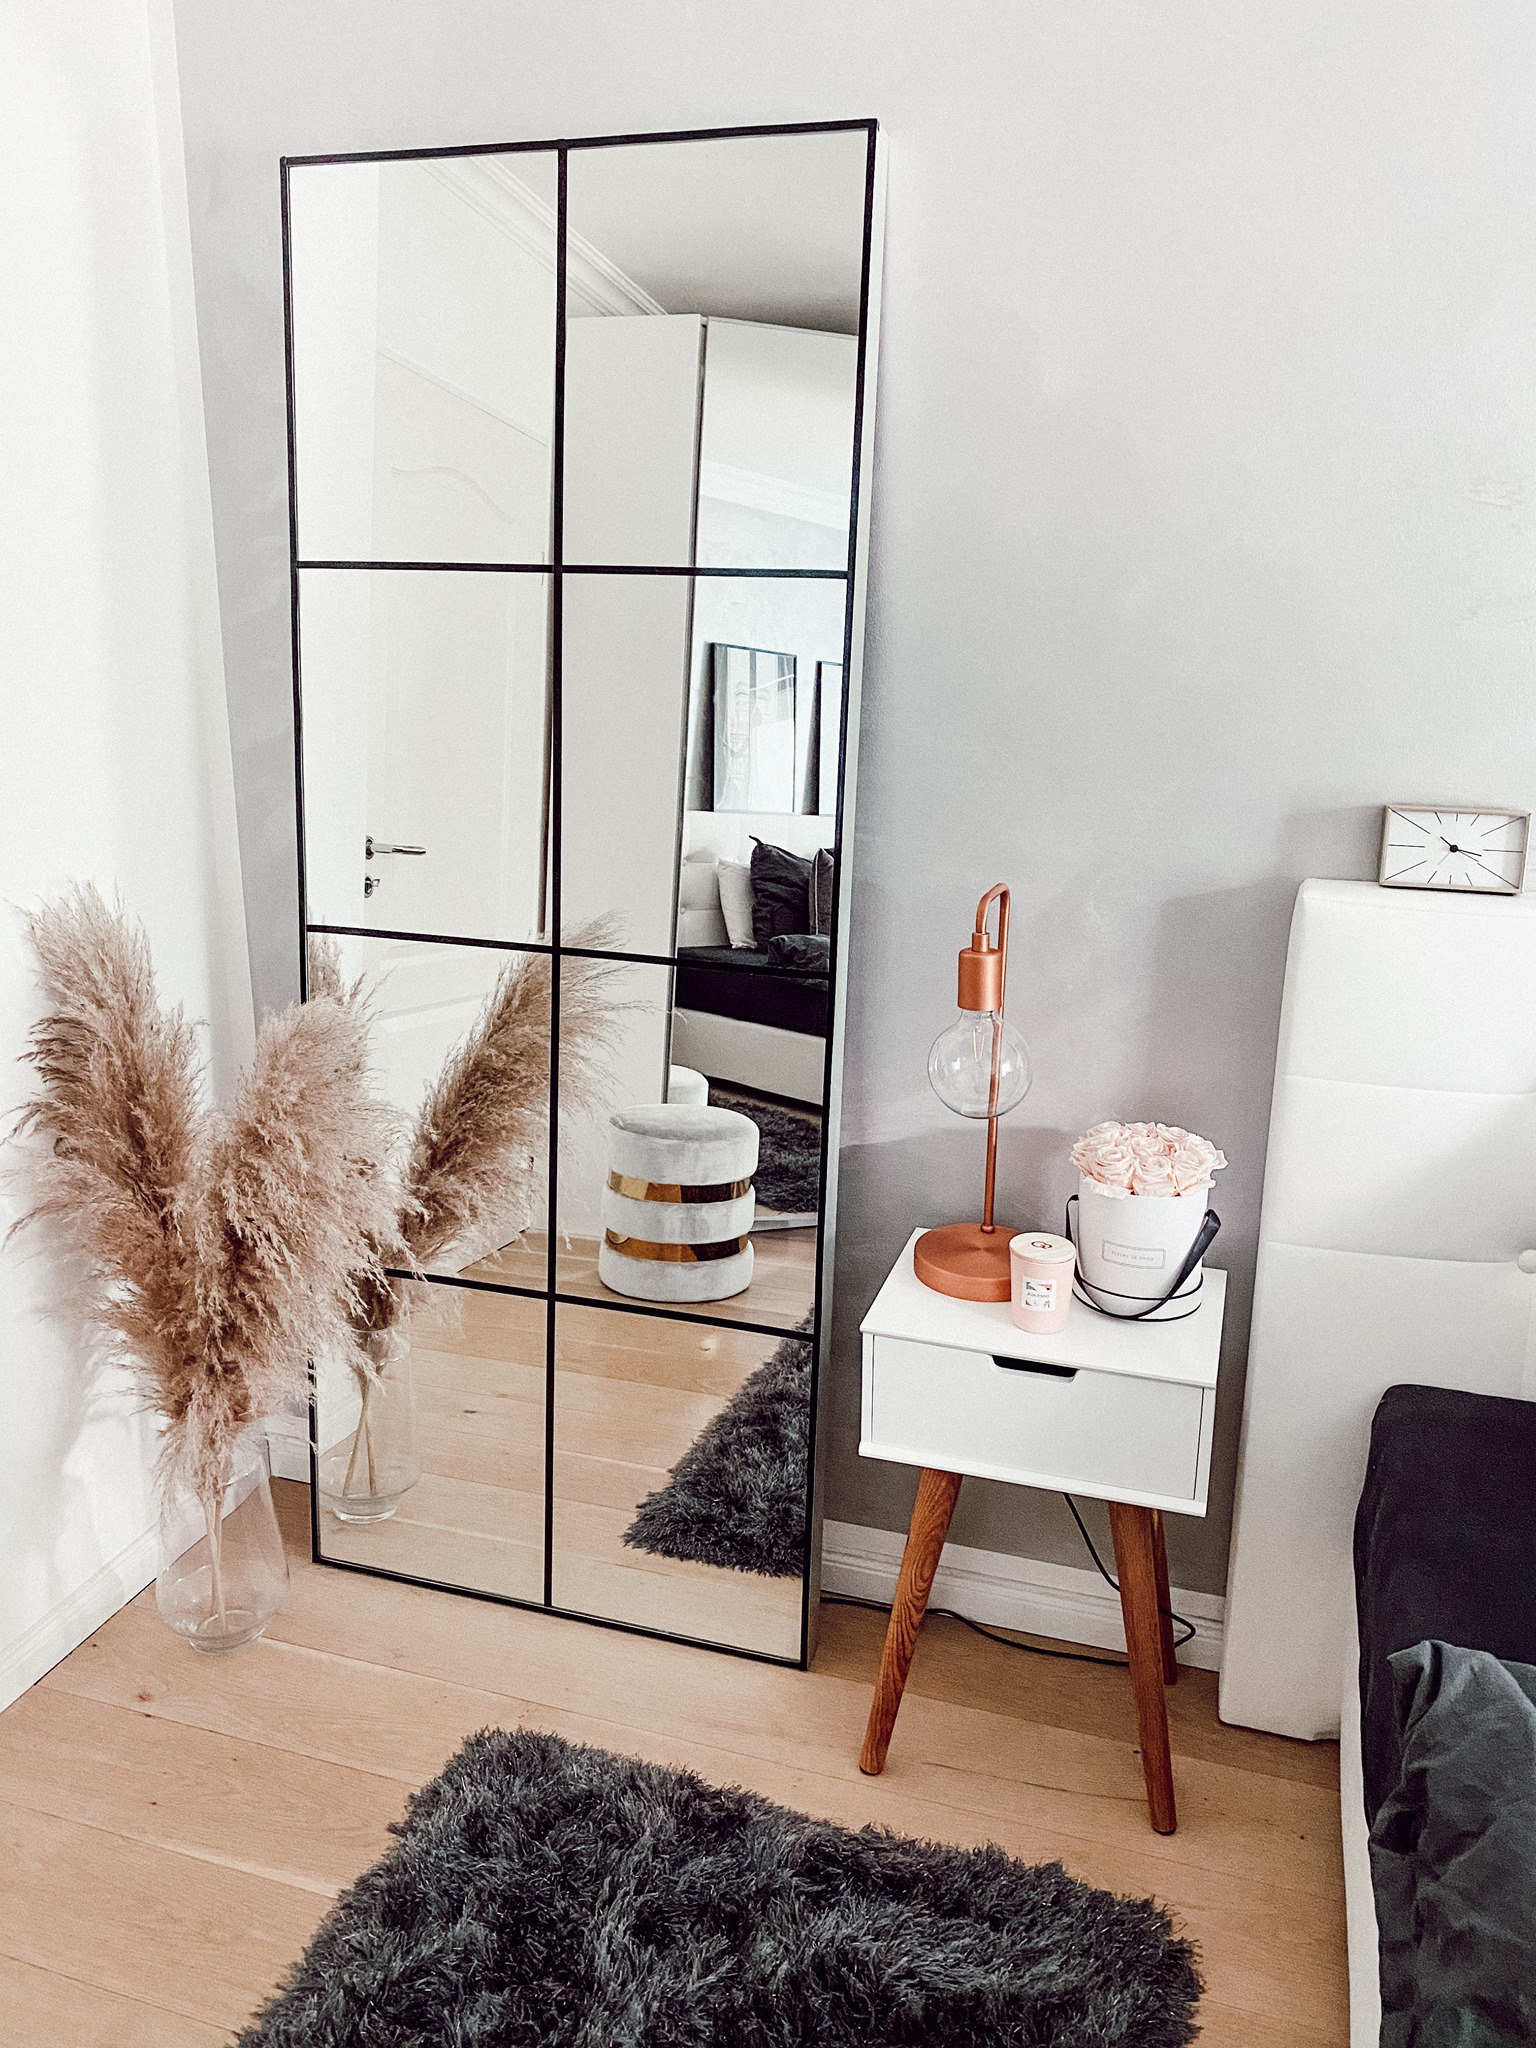 IKEA Spiegel Hack - 6 einfache Schritte, um Ihren eigenen Spiegel